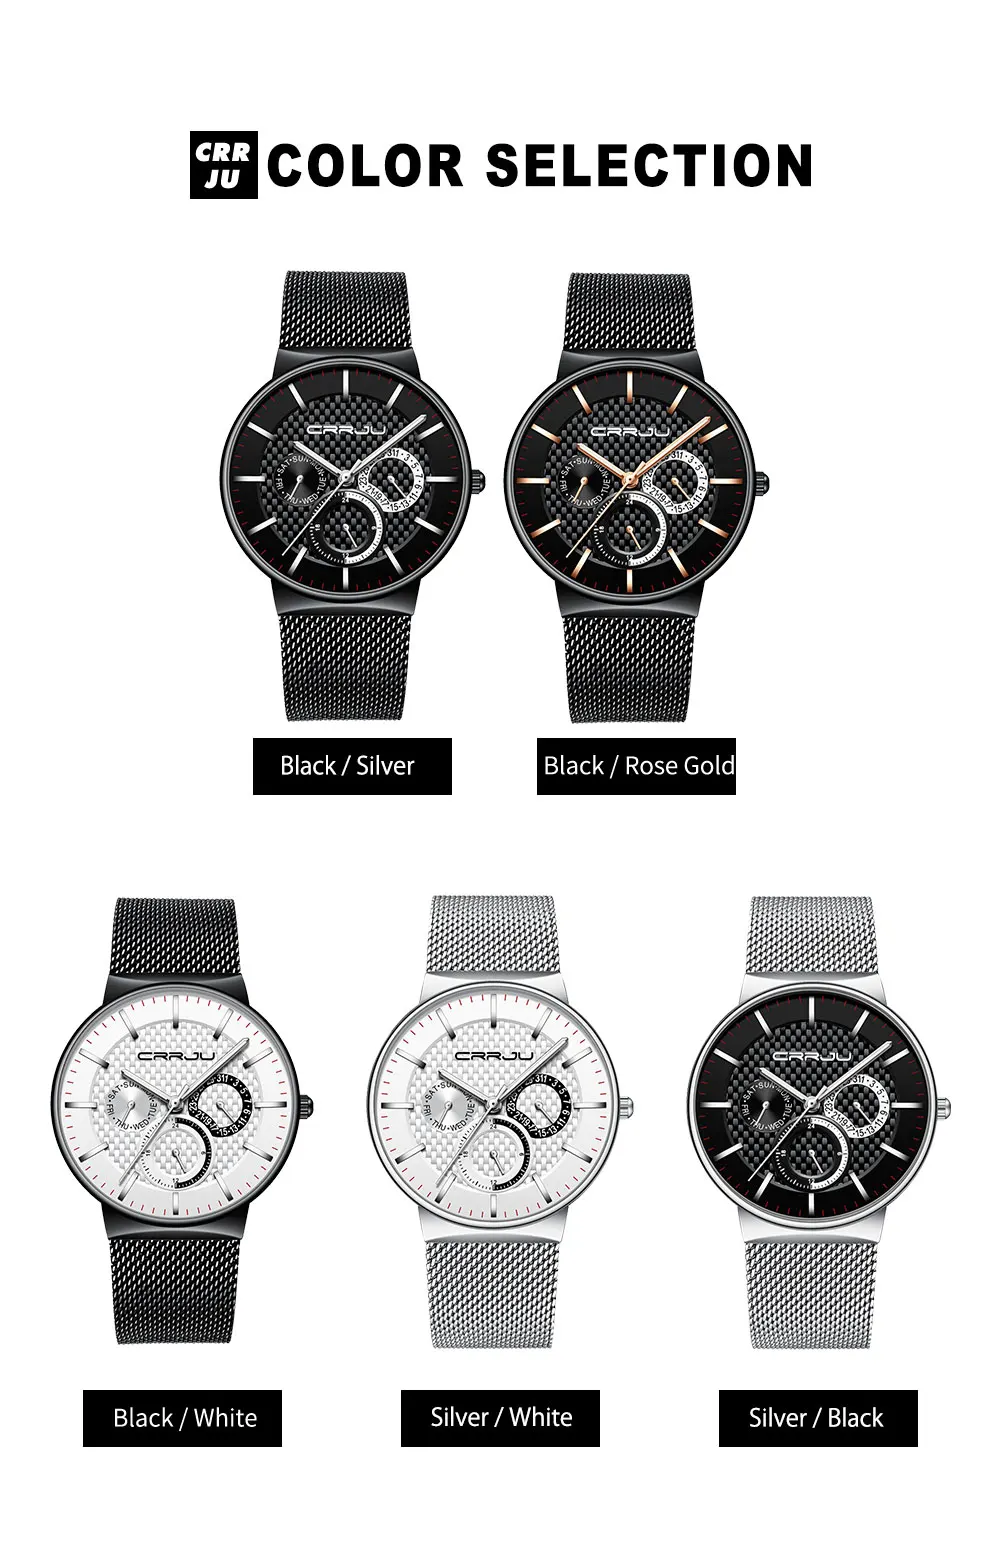 Мужские часы CRRJU Топ бренд класса люкс водонепроницаемые ультра тонкие часы с датой Мужской стальной ремешок повседневные кварцевые часы белые спортивные наручные часы